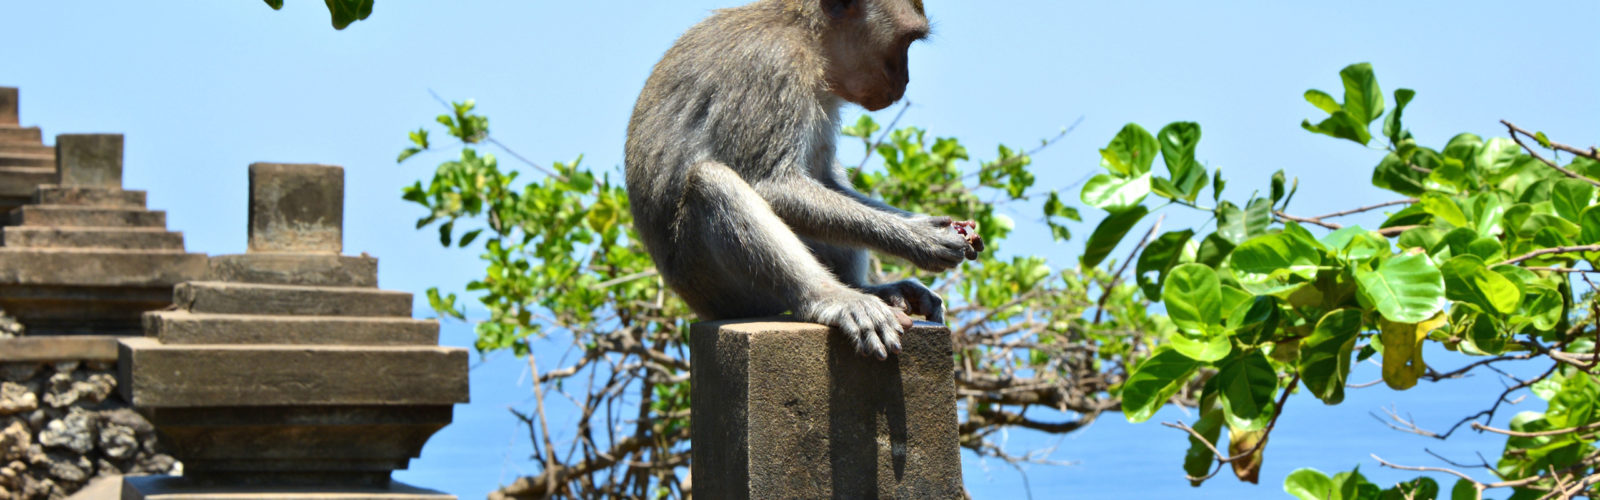 uluwatu-bali-monkey